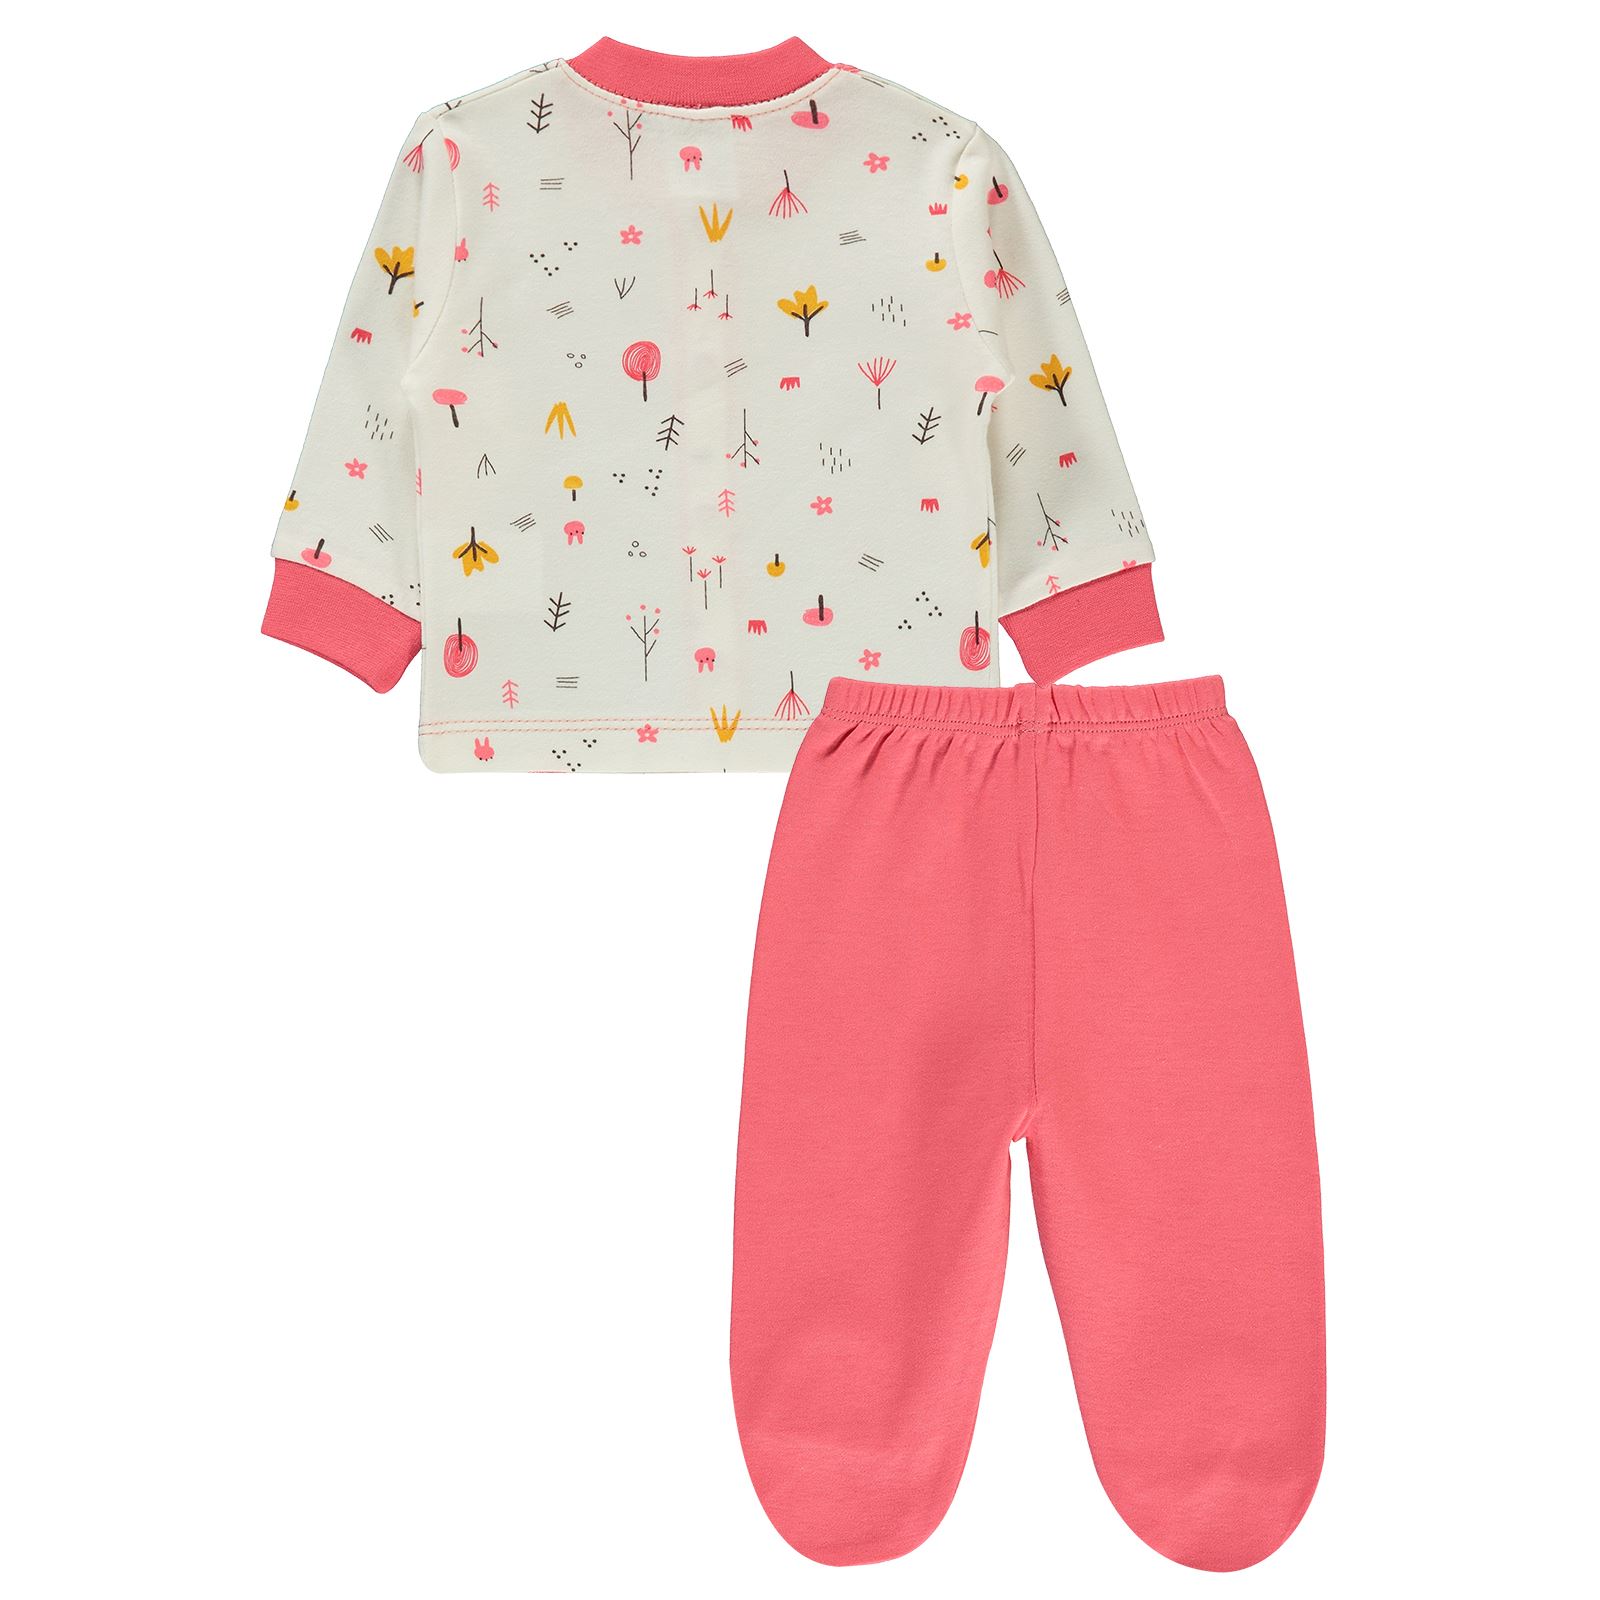 Misket Kız Bebek Pijama Takımı 0-6 Ay Narçiçeği